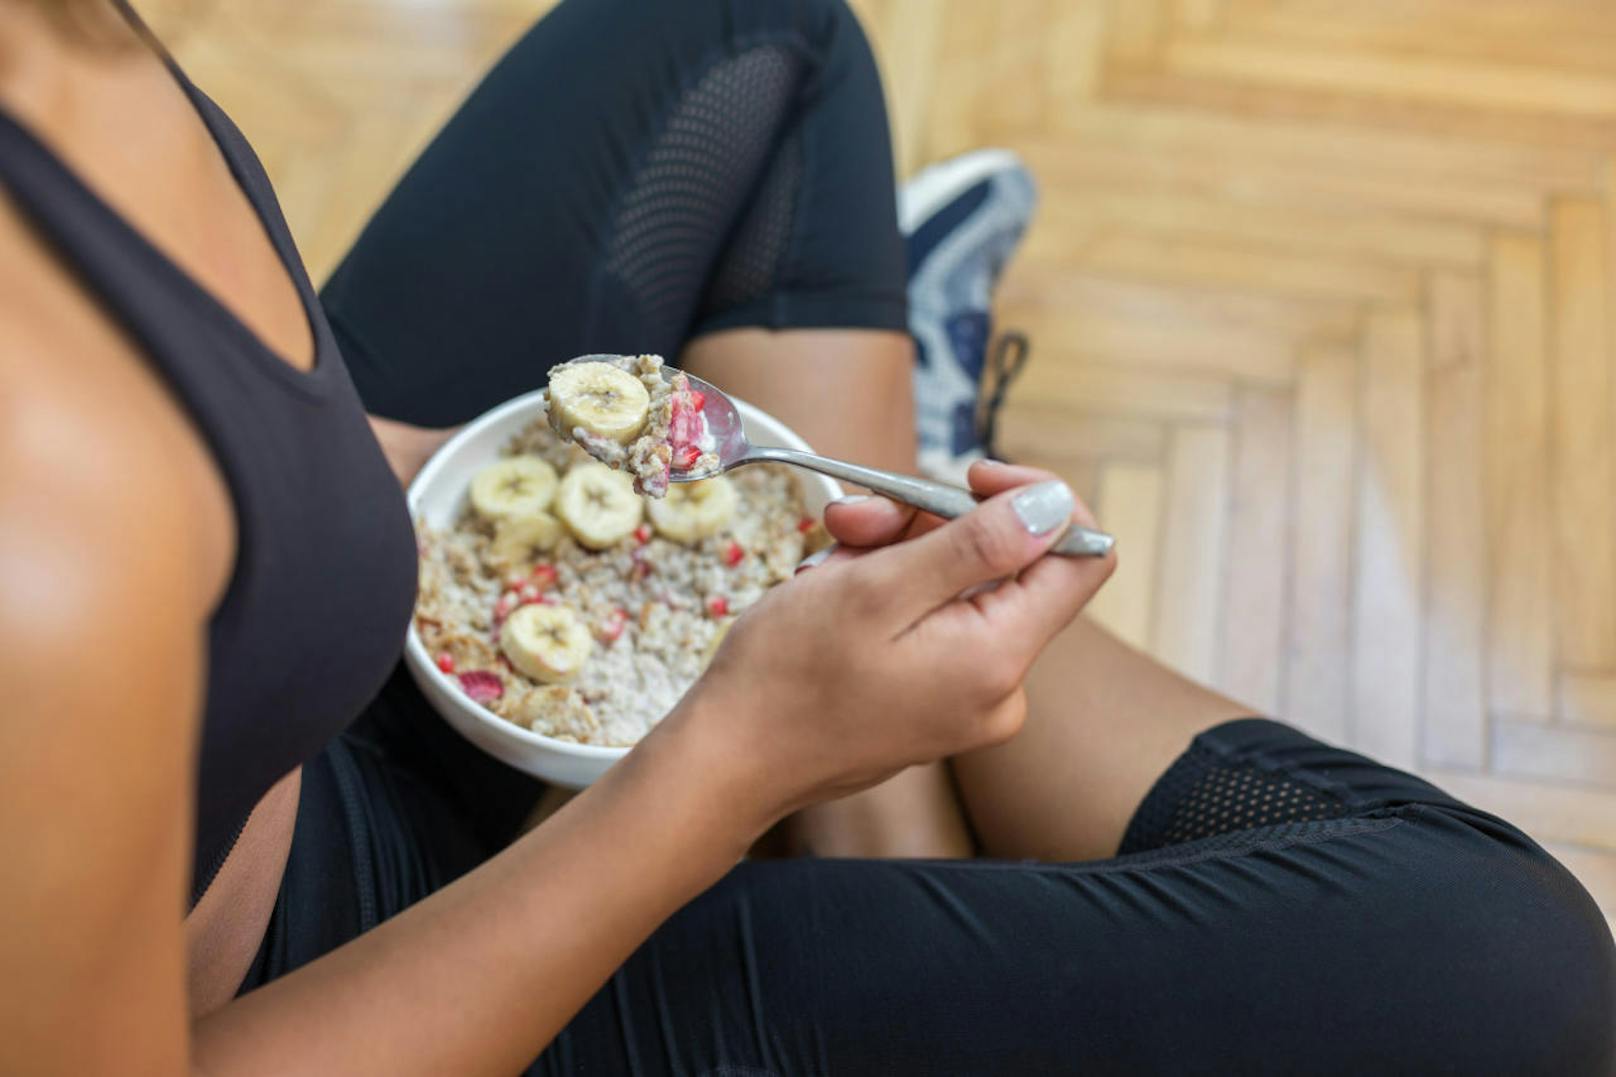 In den sozialen Medien feiern Influencer täglich ihren gesunden Lifestyle: Zum Frühstück gibts ein Granola-Müsli, ...